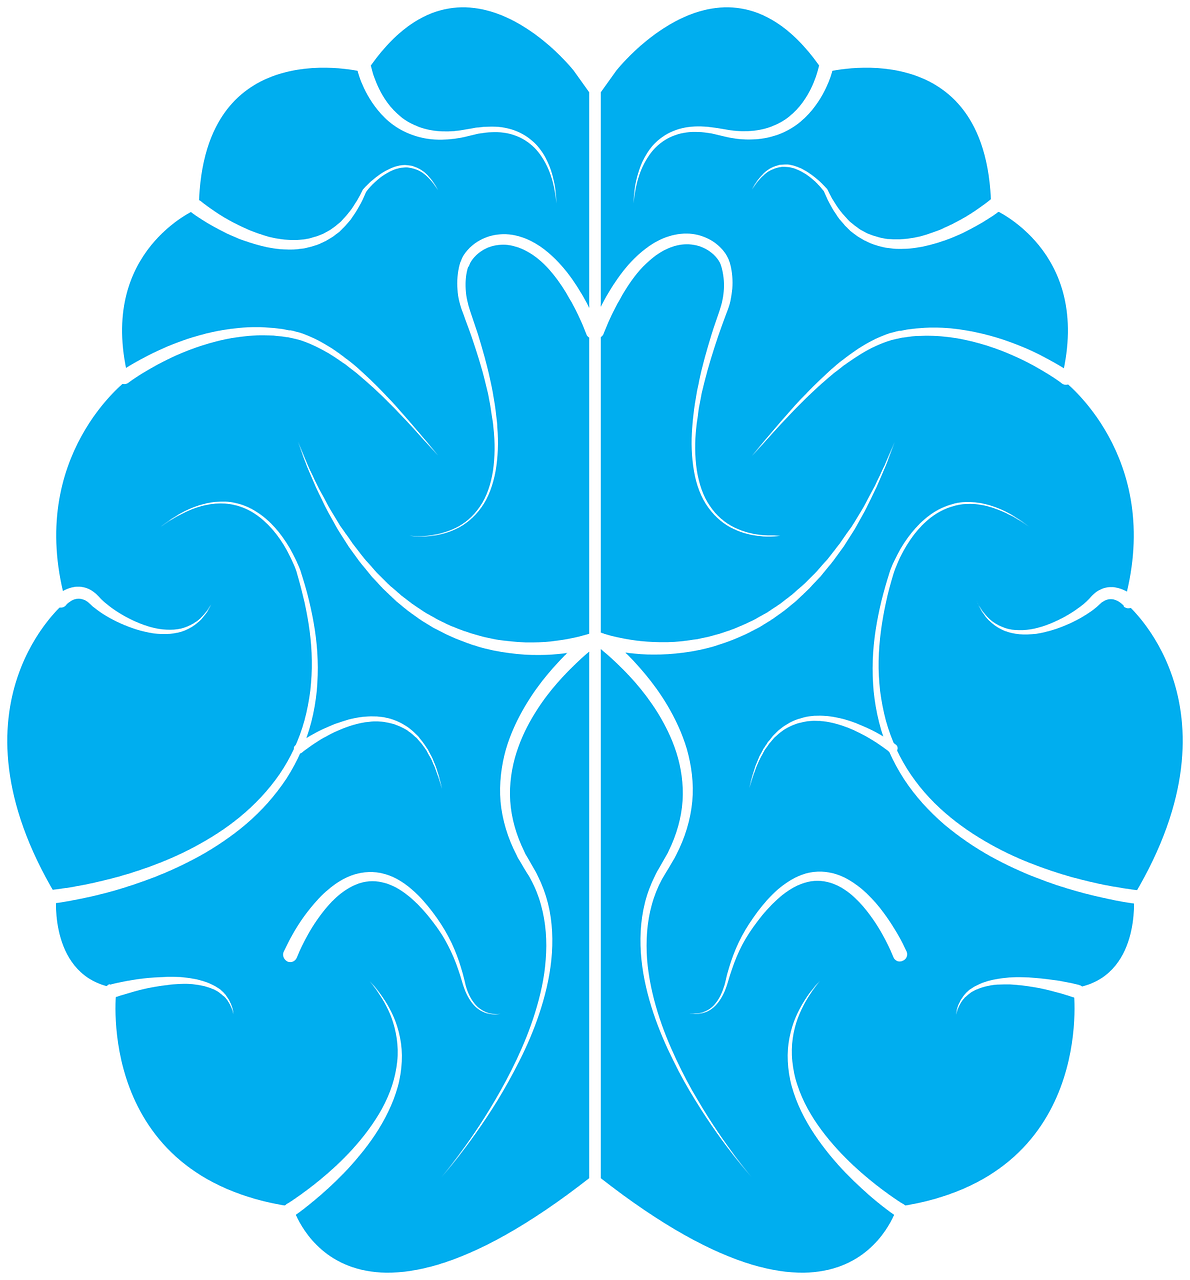 A brain icon